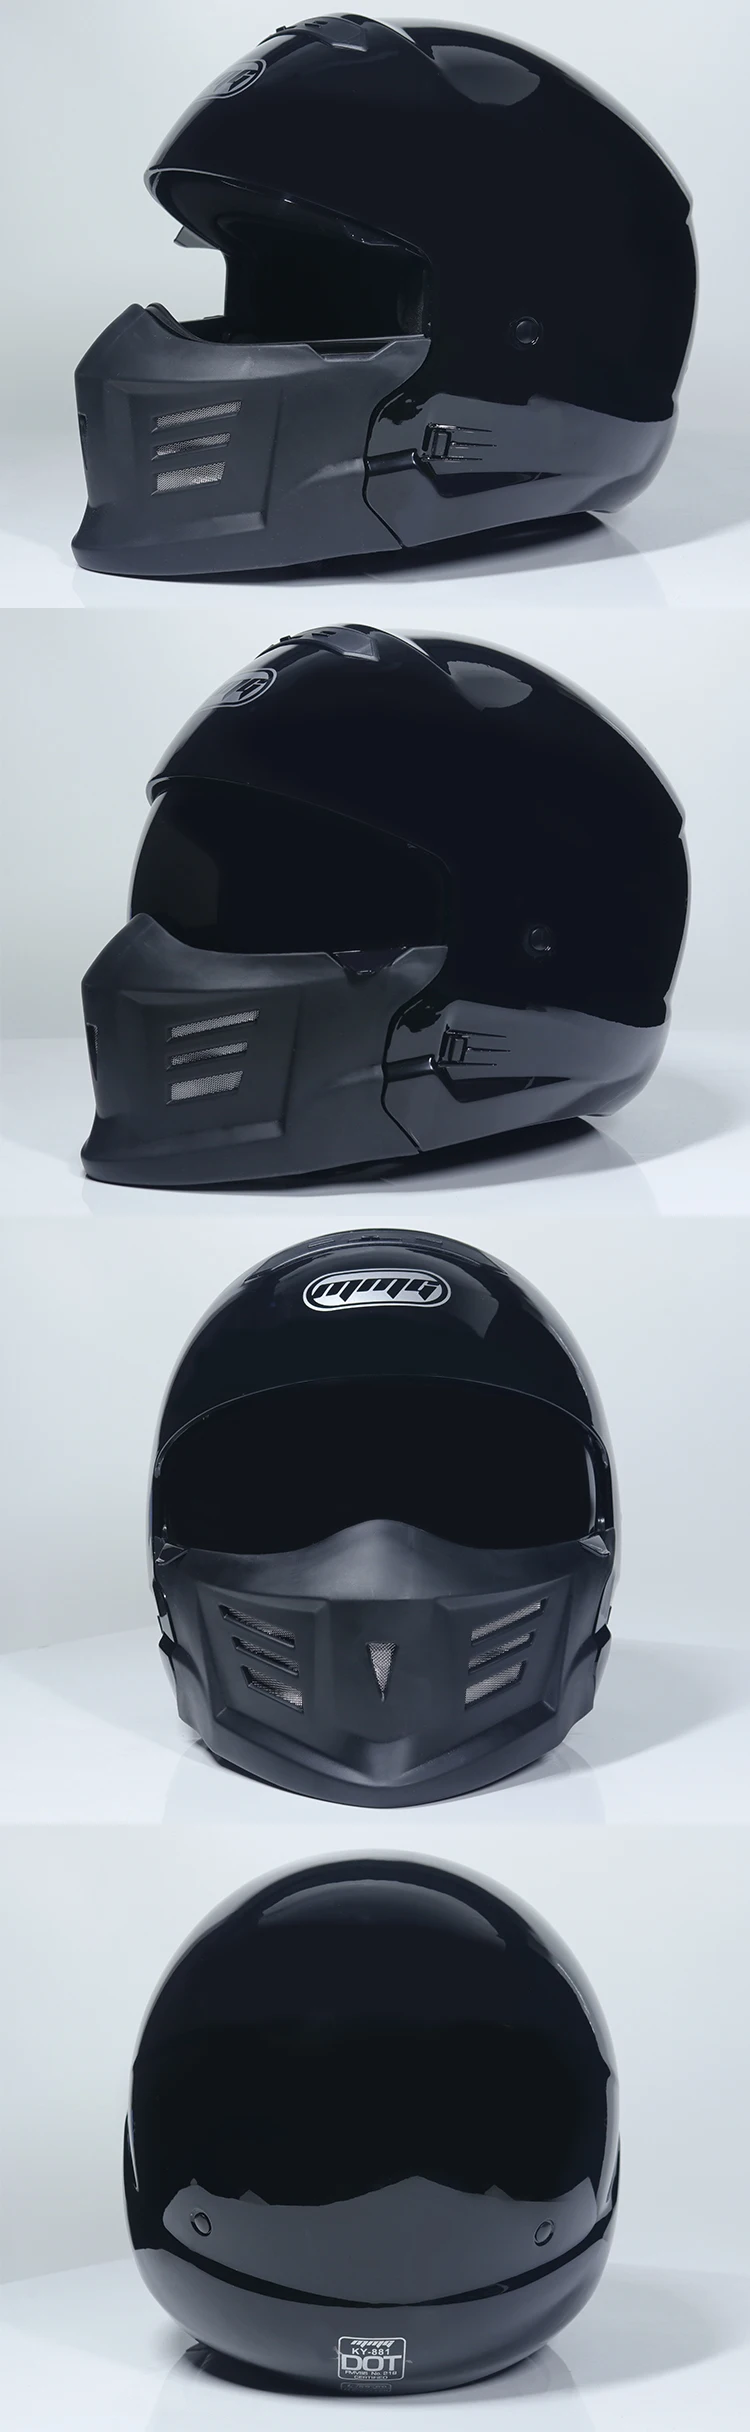 Унисекс шлем скорпиона мужской мотоциклетный Ретро анфас шлем локомотив персональный комбинированный воин шлем